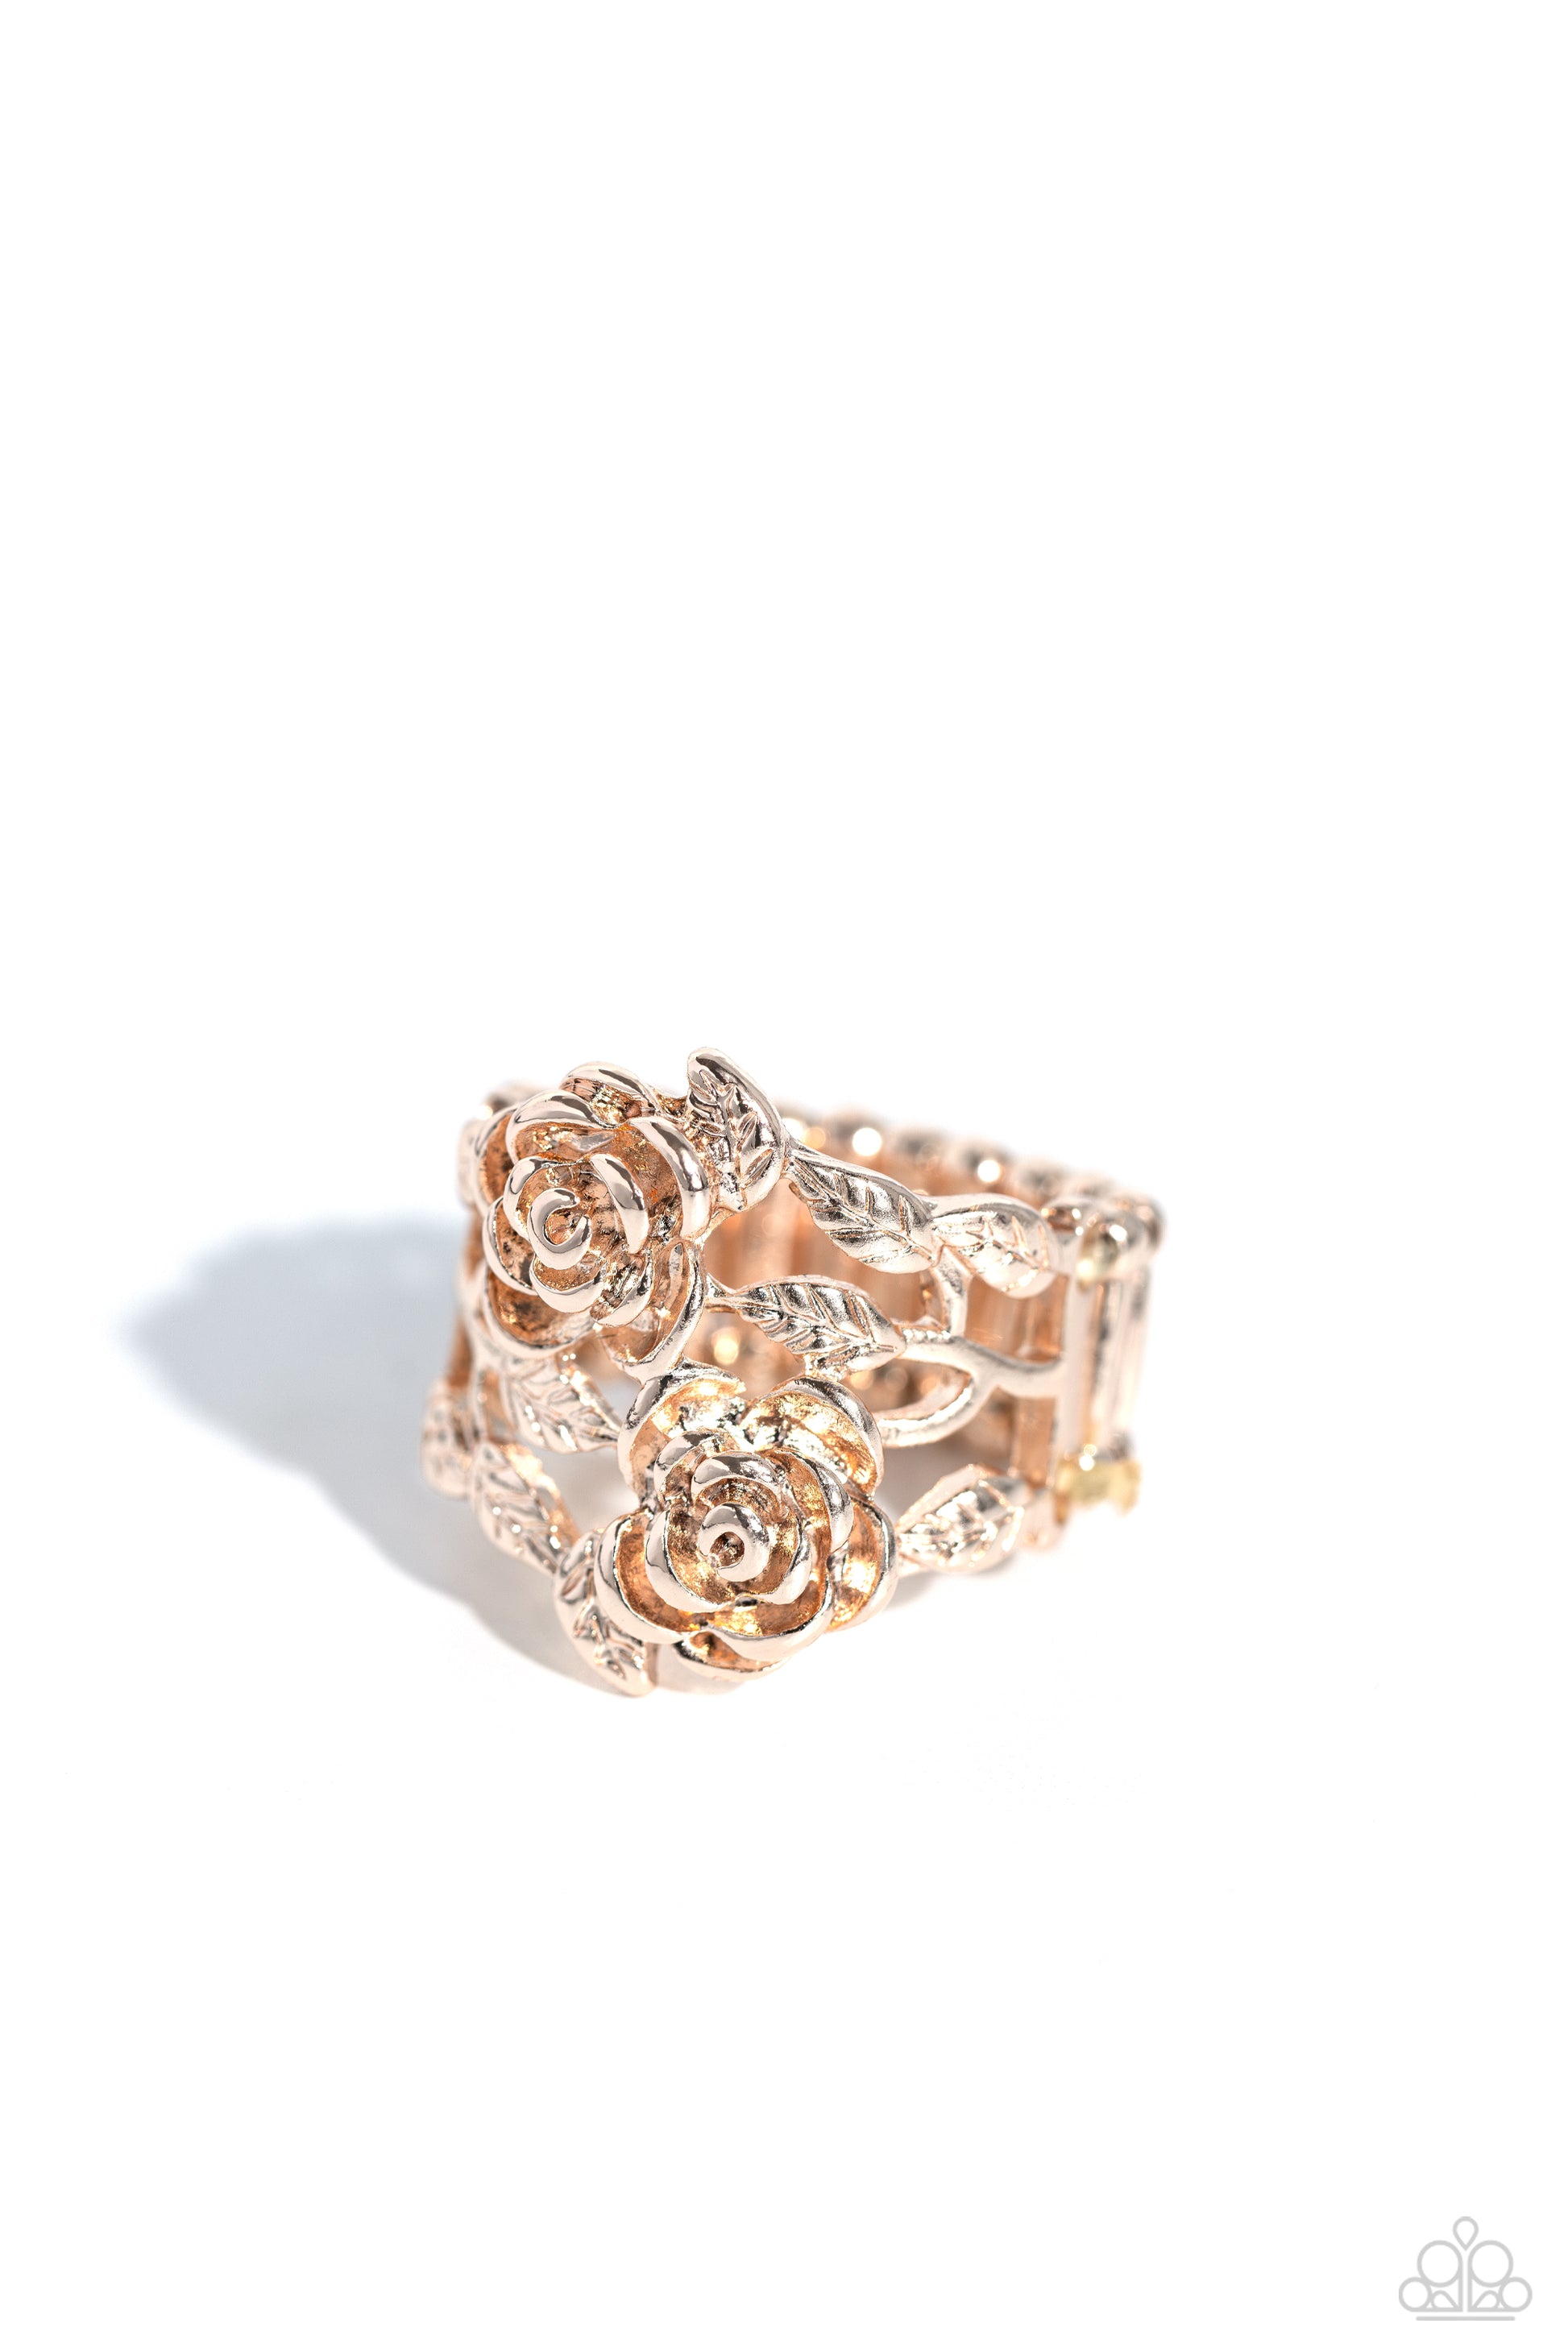 Anything ROSE - rose gold - Paparazzi ring